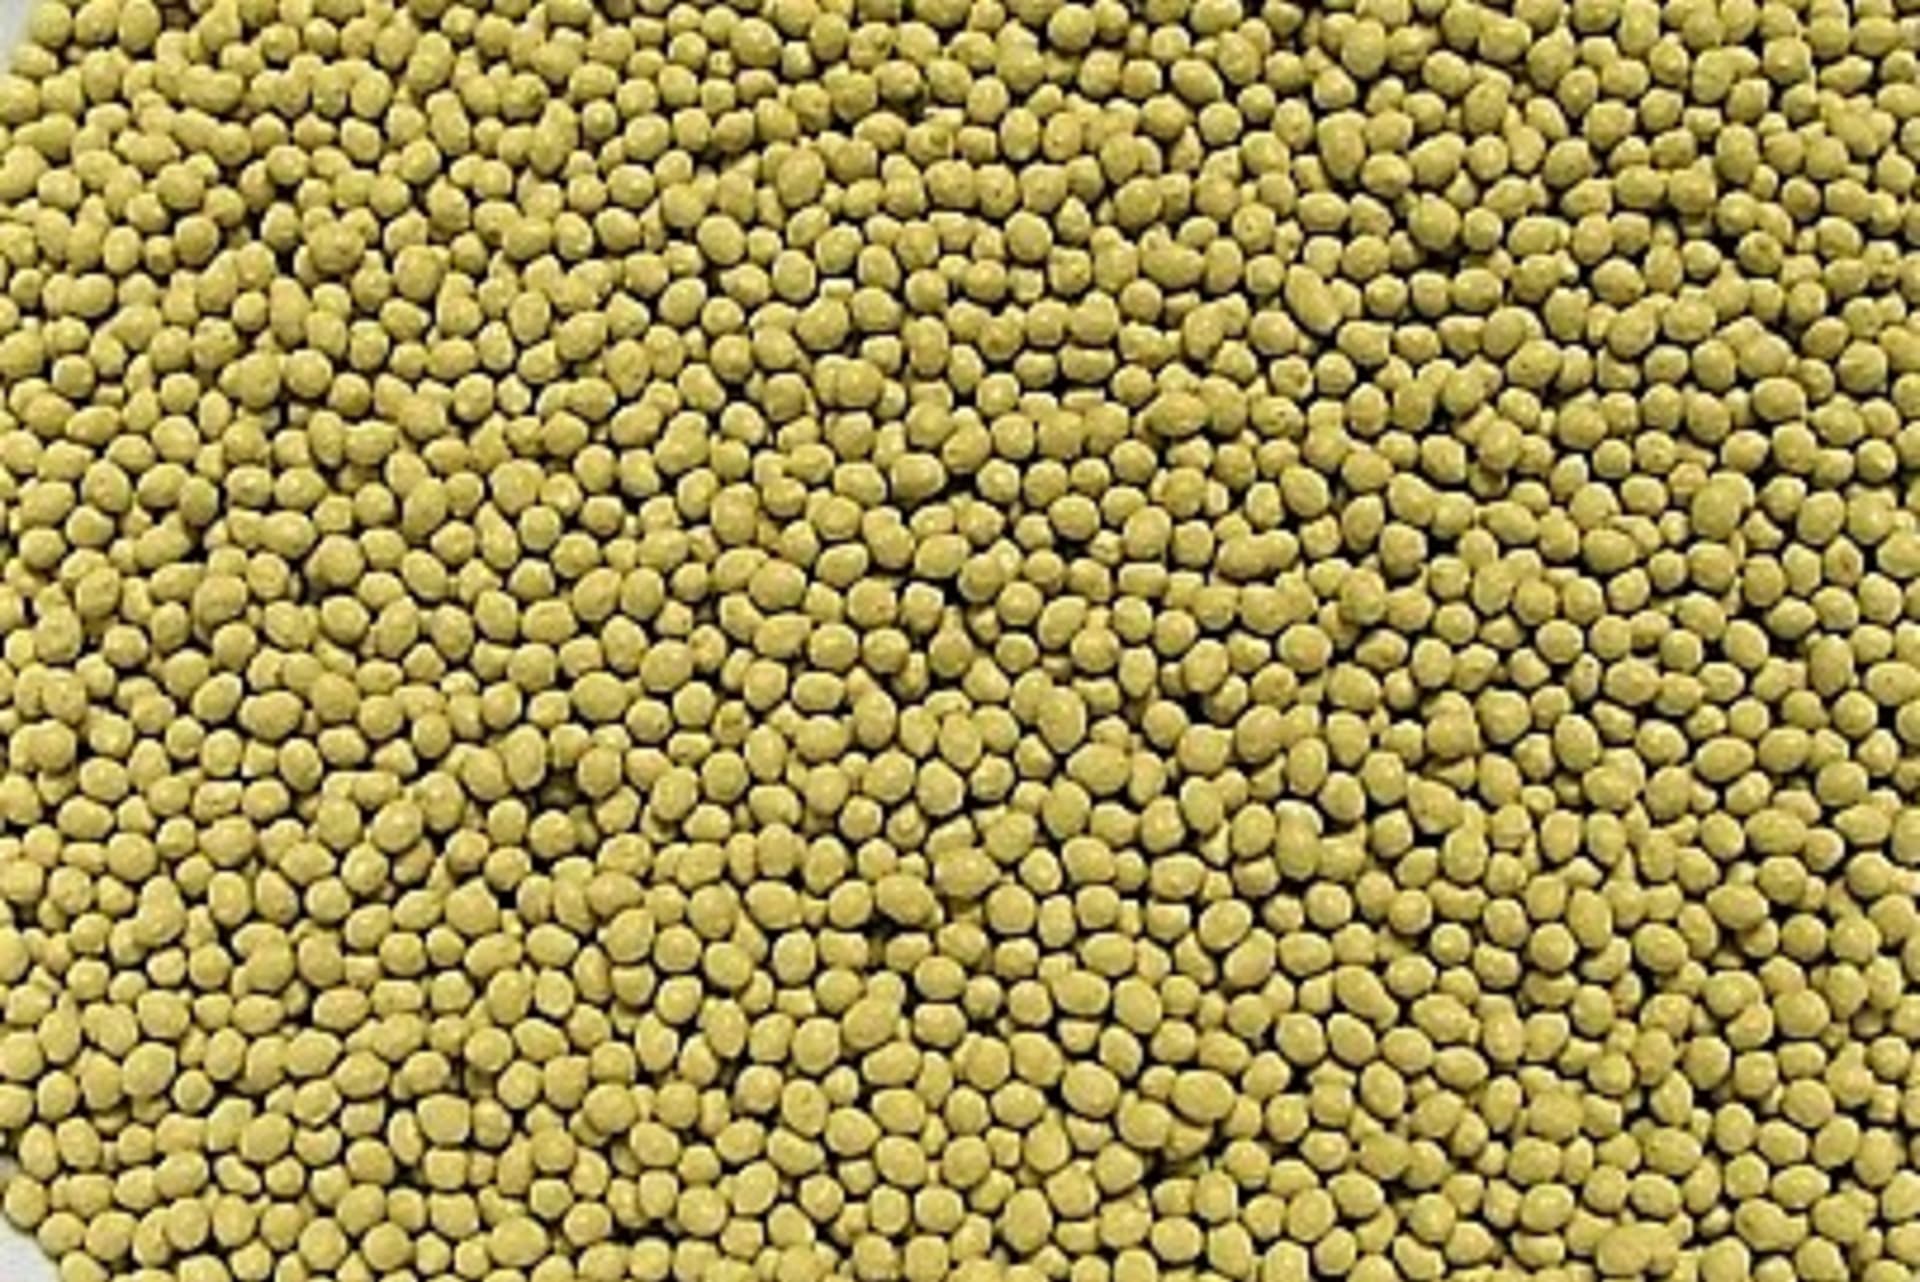 Semínka petúnií jsou drobná, v 1 g jich je kolem 10 000, a proto se prodávají tzv. peletované. Semeno je obalené inertní hmotou na bázi kaolinu. Vznikne kulička, peletka, o průměru 1 – 2 mm, která umožní přesný výsev.